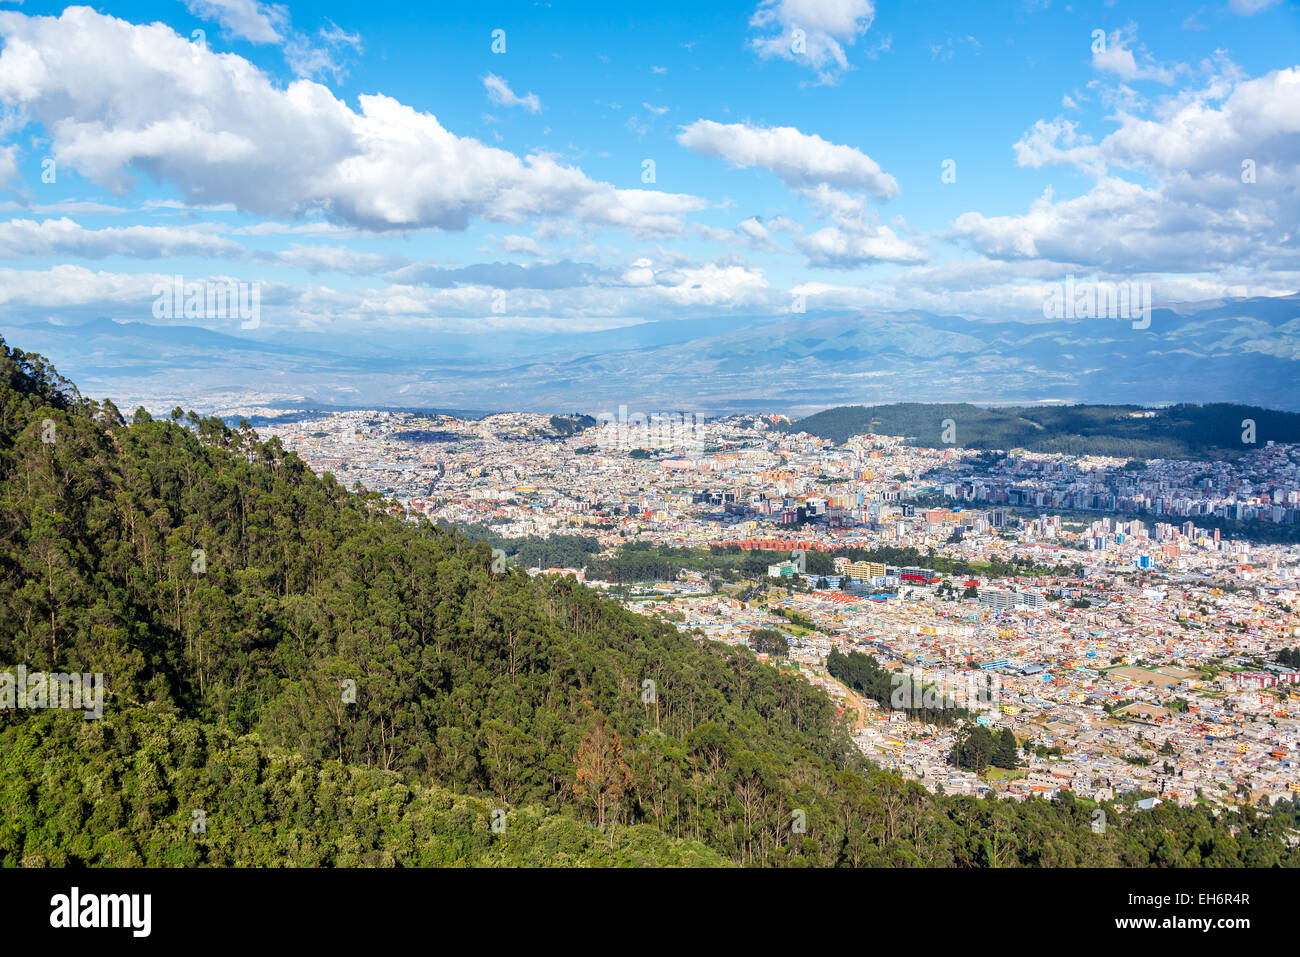 Cityscape of Quito, Ecuador Stock Photo